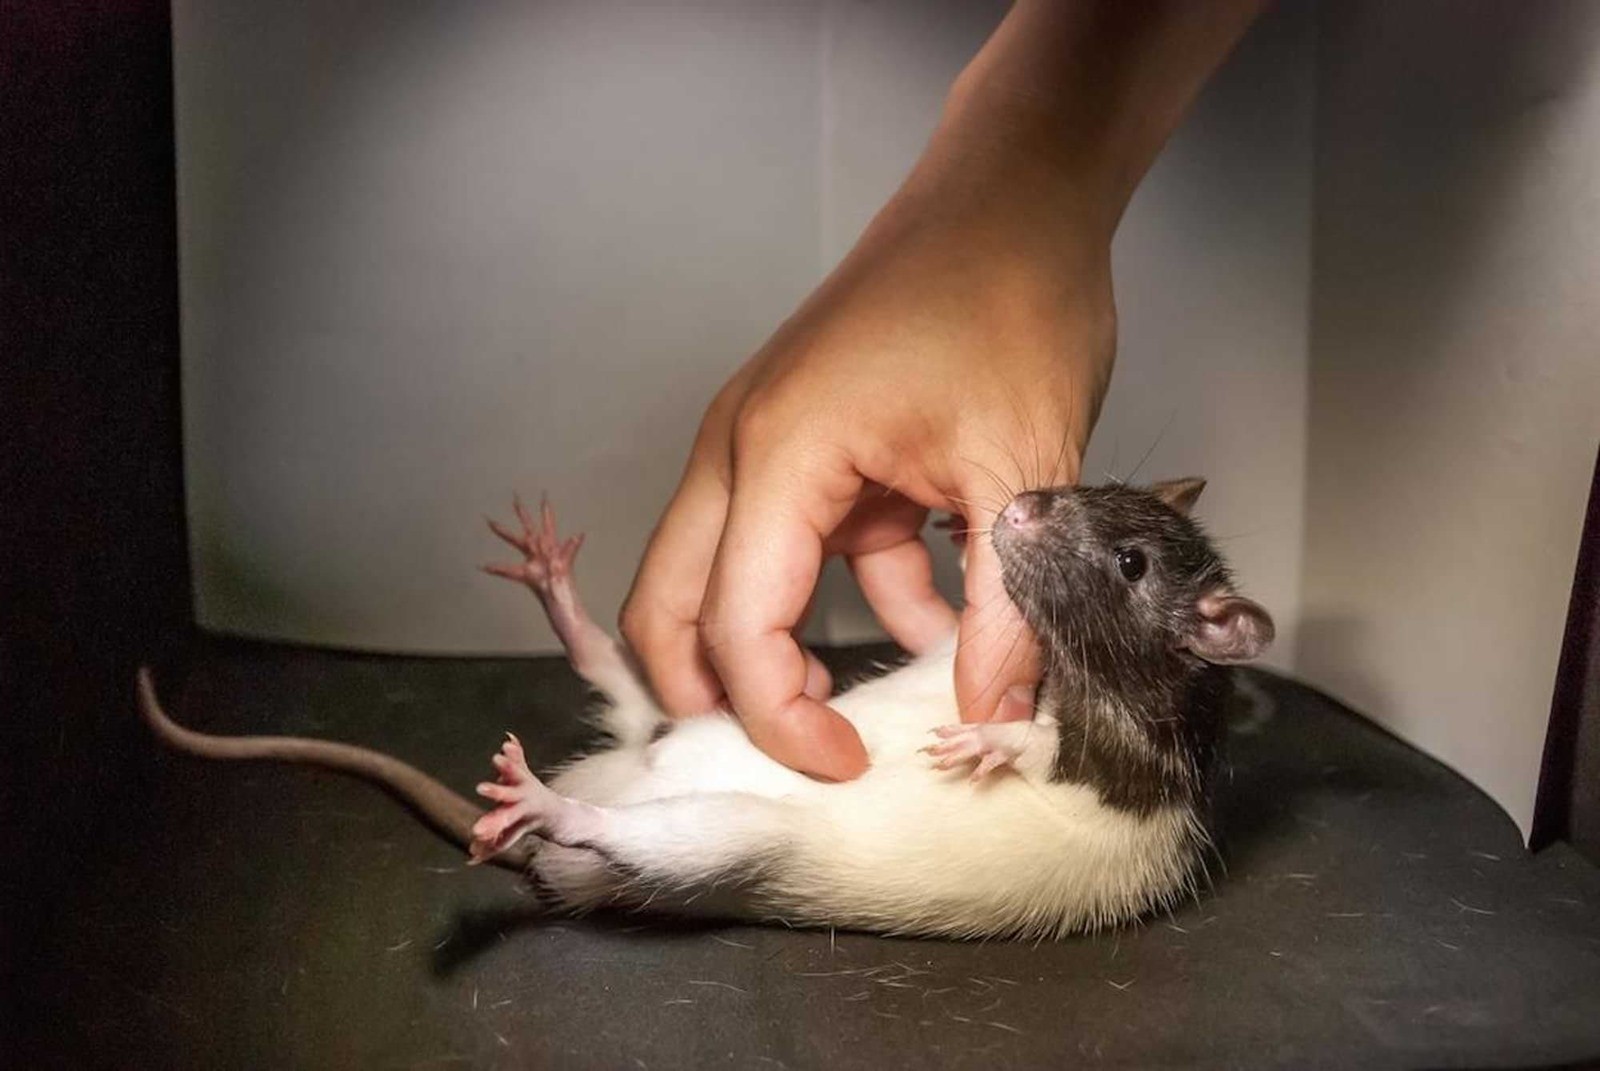 Le fou rire des rats révèle que d’être chatouilleux nous motive à l’interaction